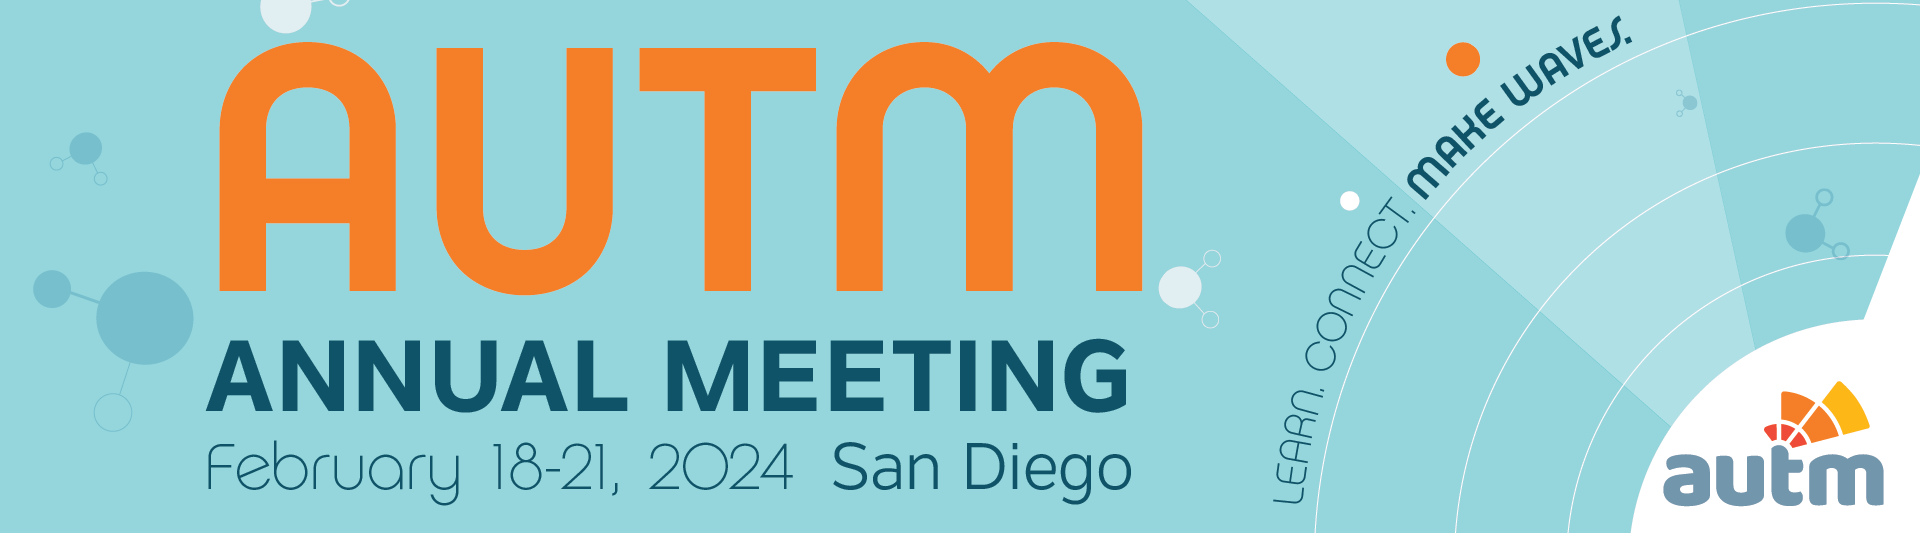 AUTM 2024 Annual Meeting in San Diego